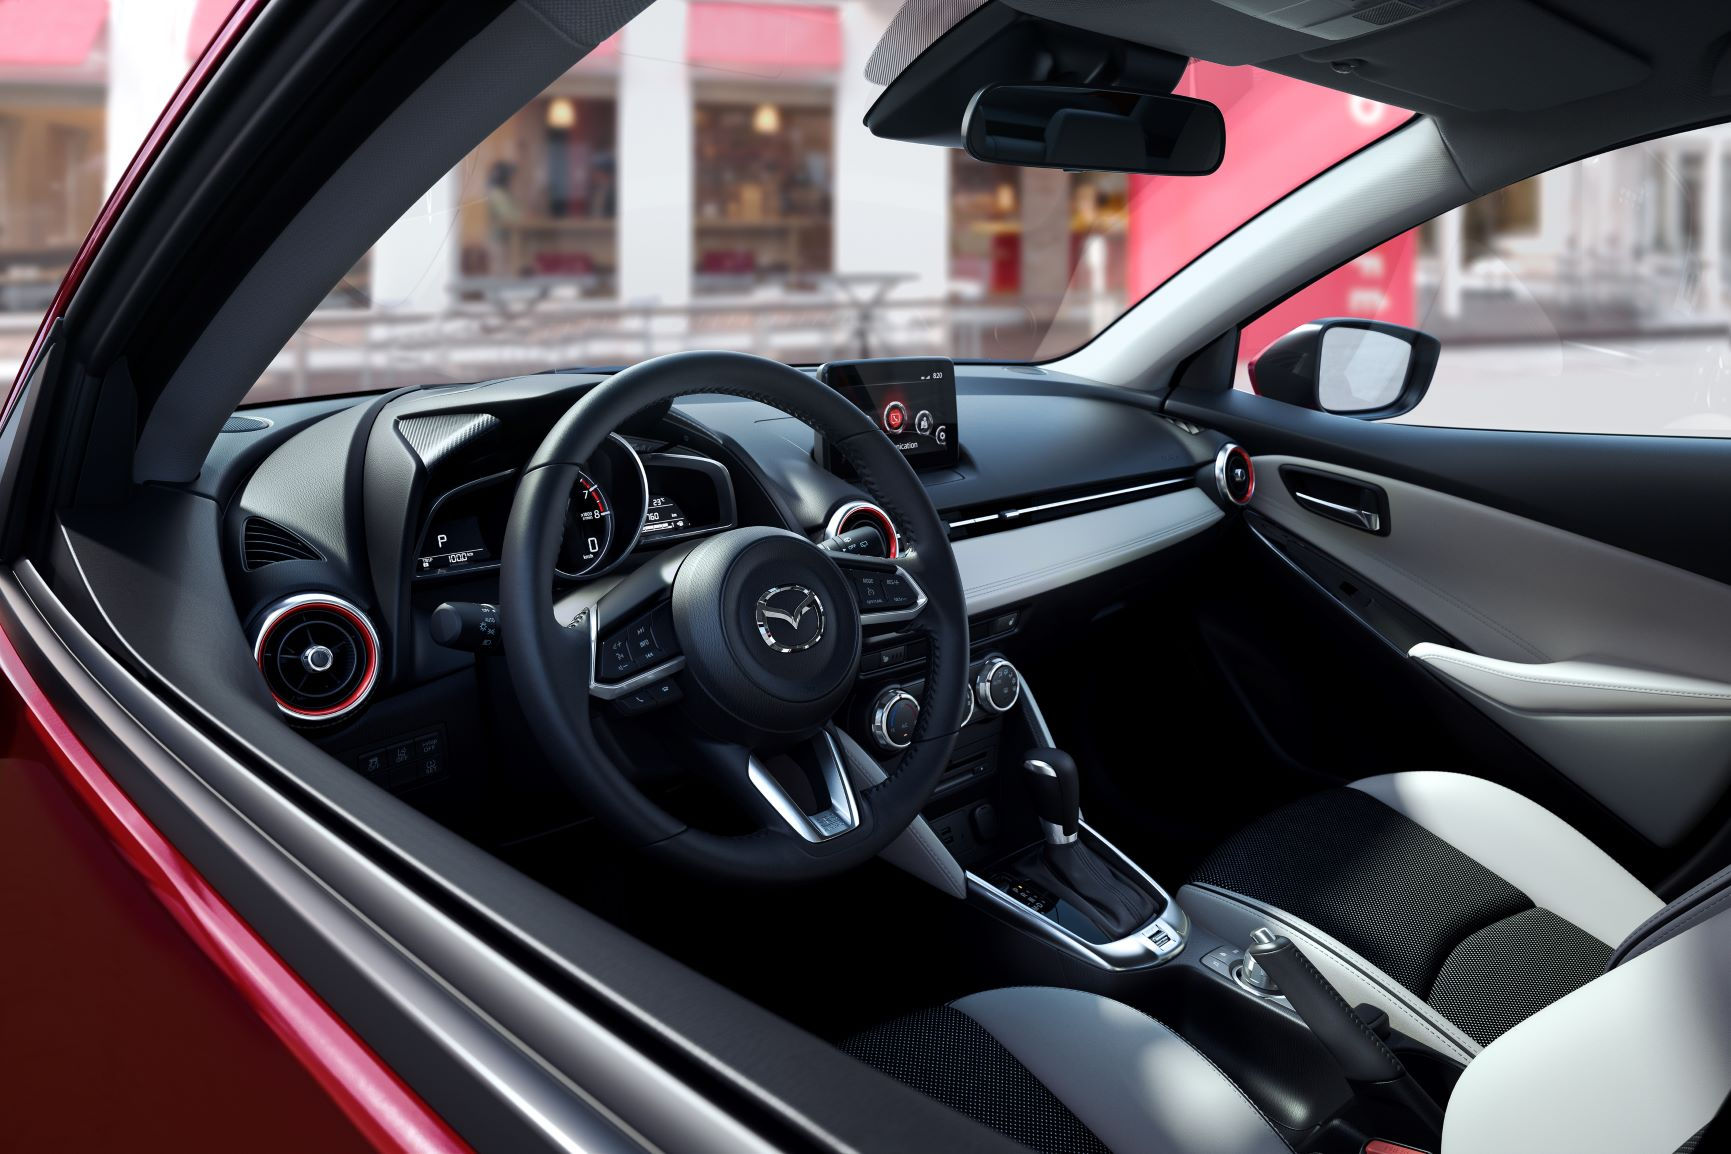 Mazda2 có hệ thống điều hòa tự động, khởi động bằng nút bấm, hệ thống giải trí CD, radio, 6 loa.